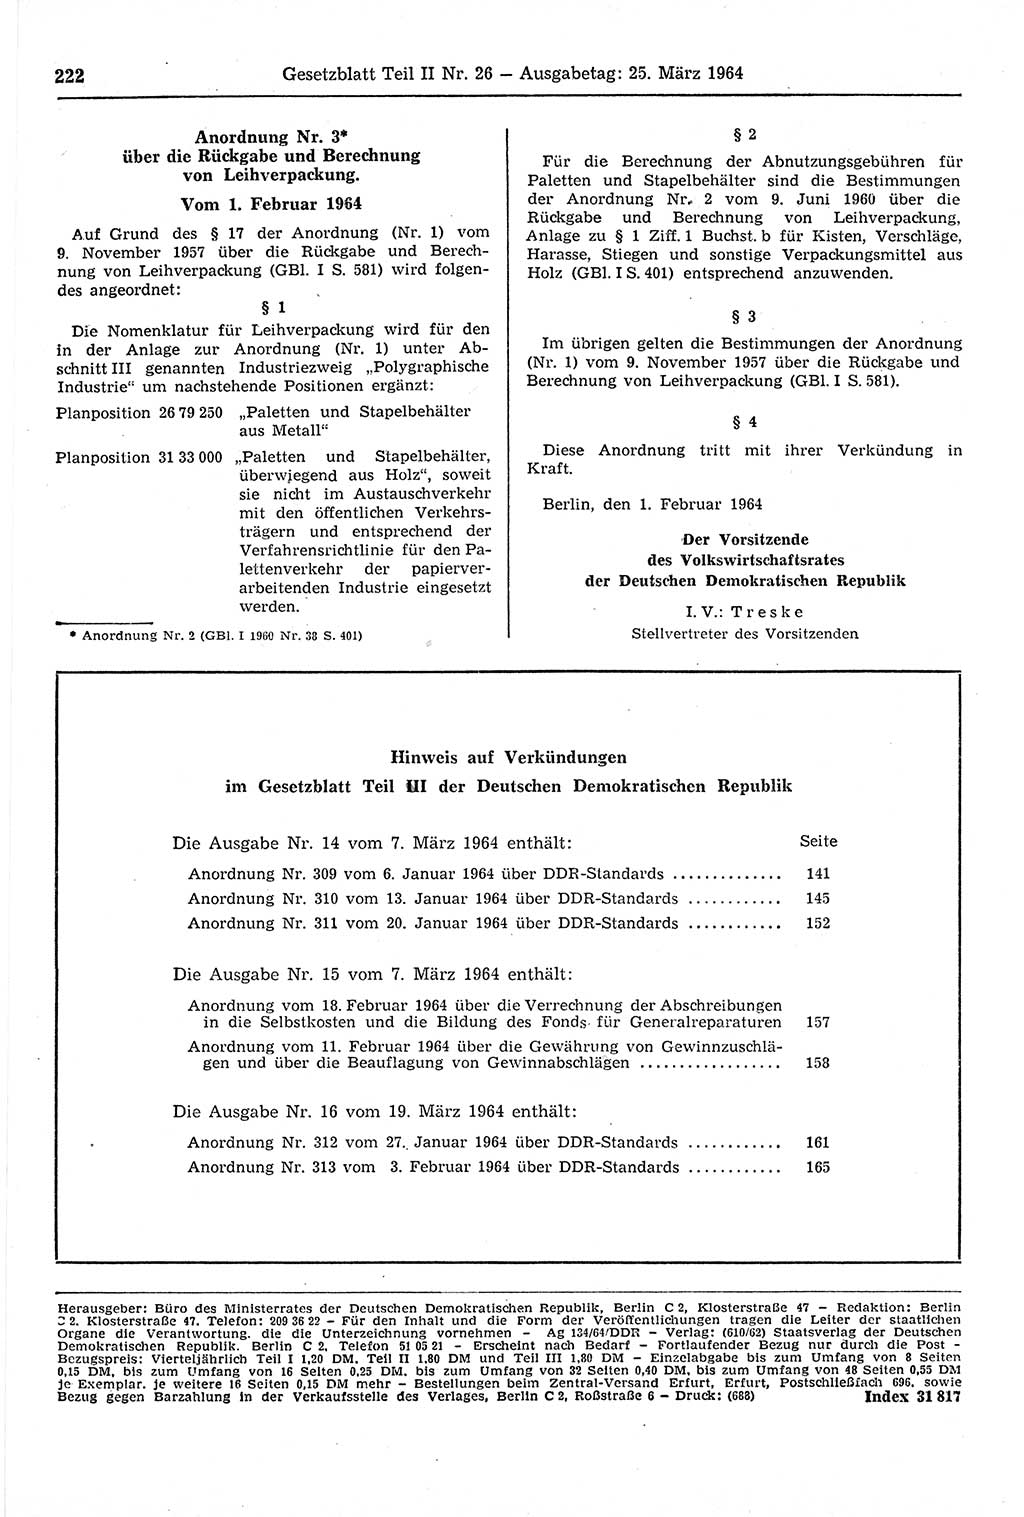 Gesetzblatt (GBl.) der Deutschen Demokratischen Republik (DDR) Teil ⅠⅠ 1964, Seite 222 (GBl. DDR ⅠⅠ 1964, S. 222)